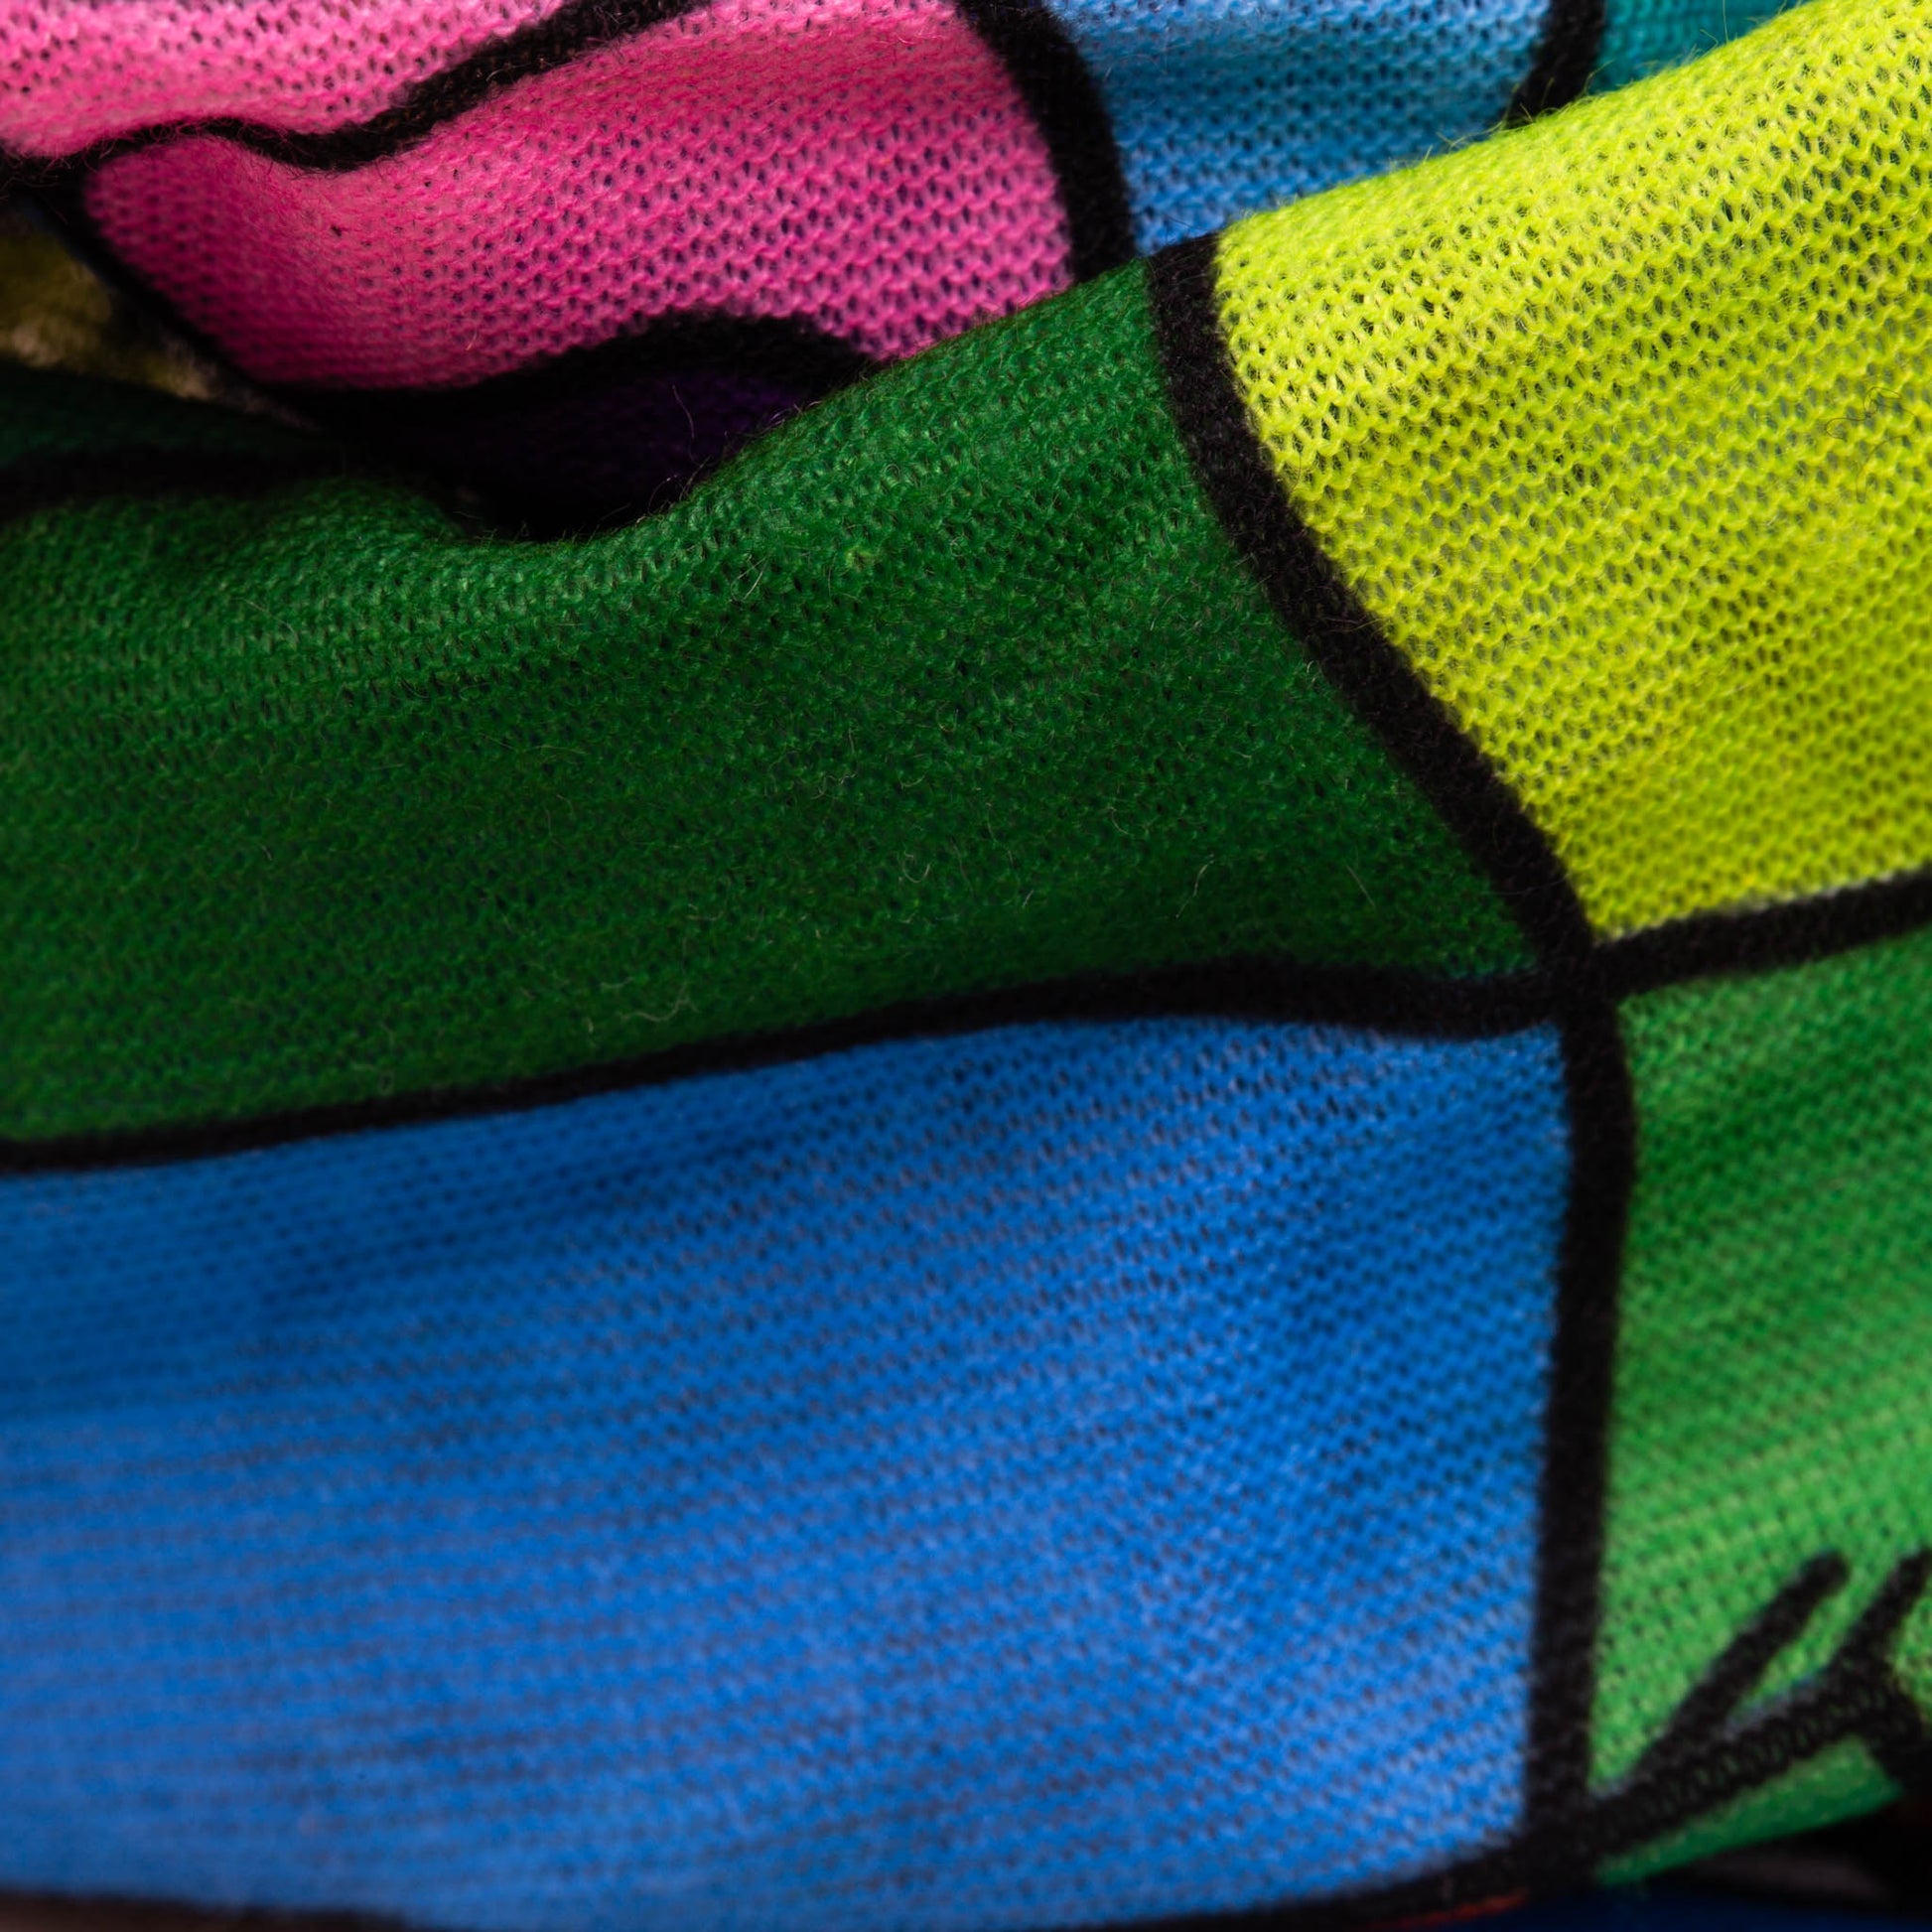 Bentiță multifuncțională potrivită pentru sport cu imprimeu winter sports - Multicolor